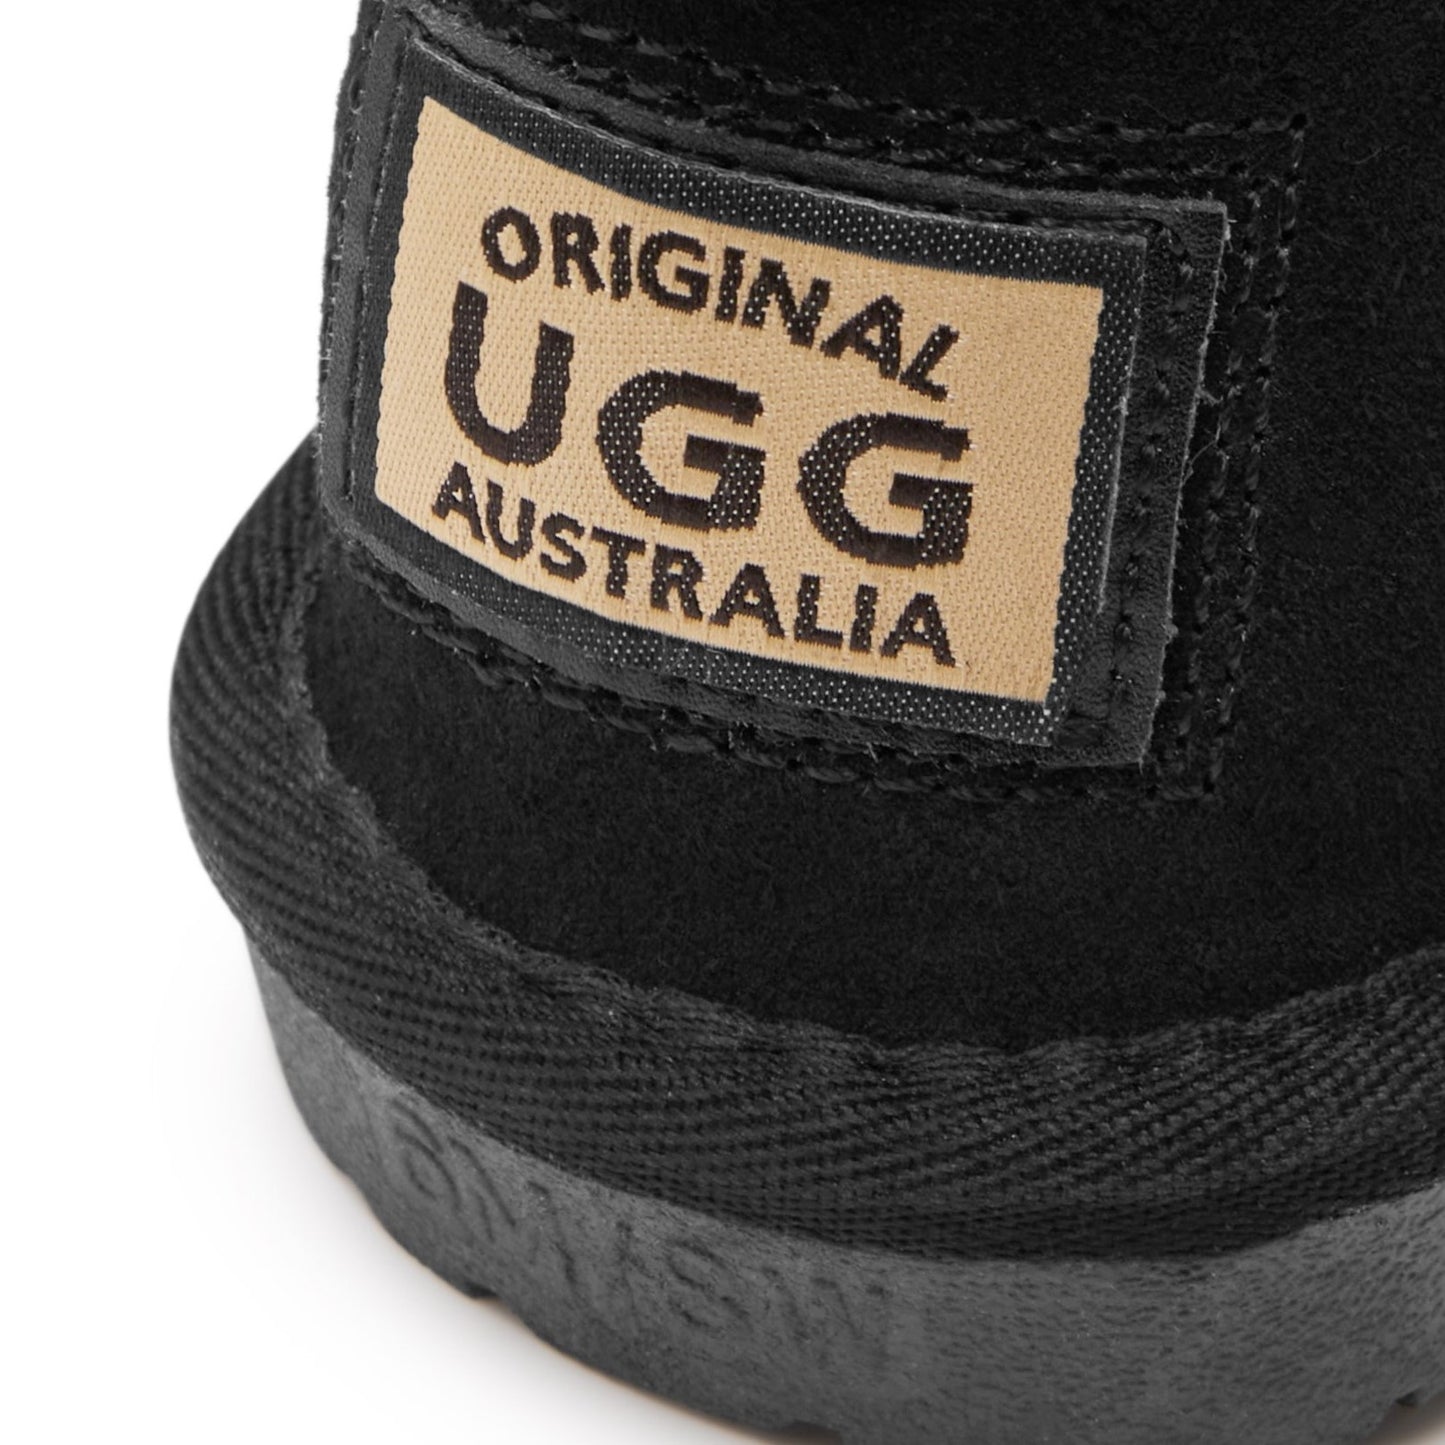 Originals Ugg Australia Zip Lace Long Boots Black